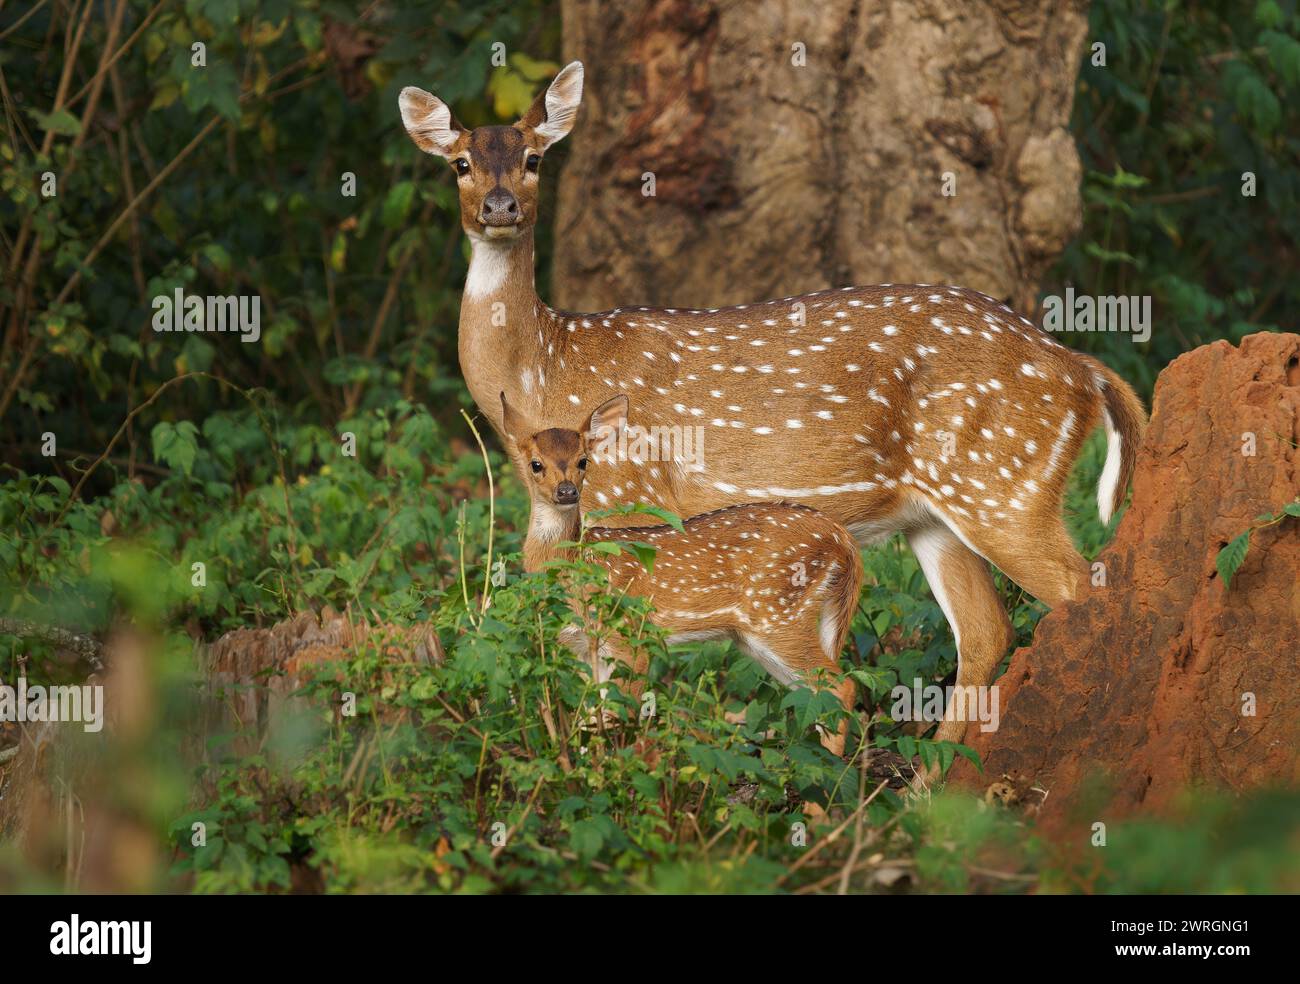 Chital ou Cheetal - axe axe également cerf ponctué, originaire du sous-continent indien, portrait dans la jungle indienne, mère femelle avec jeune veau sucki Banque D'Images